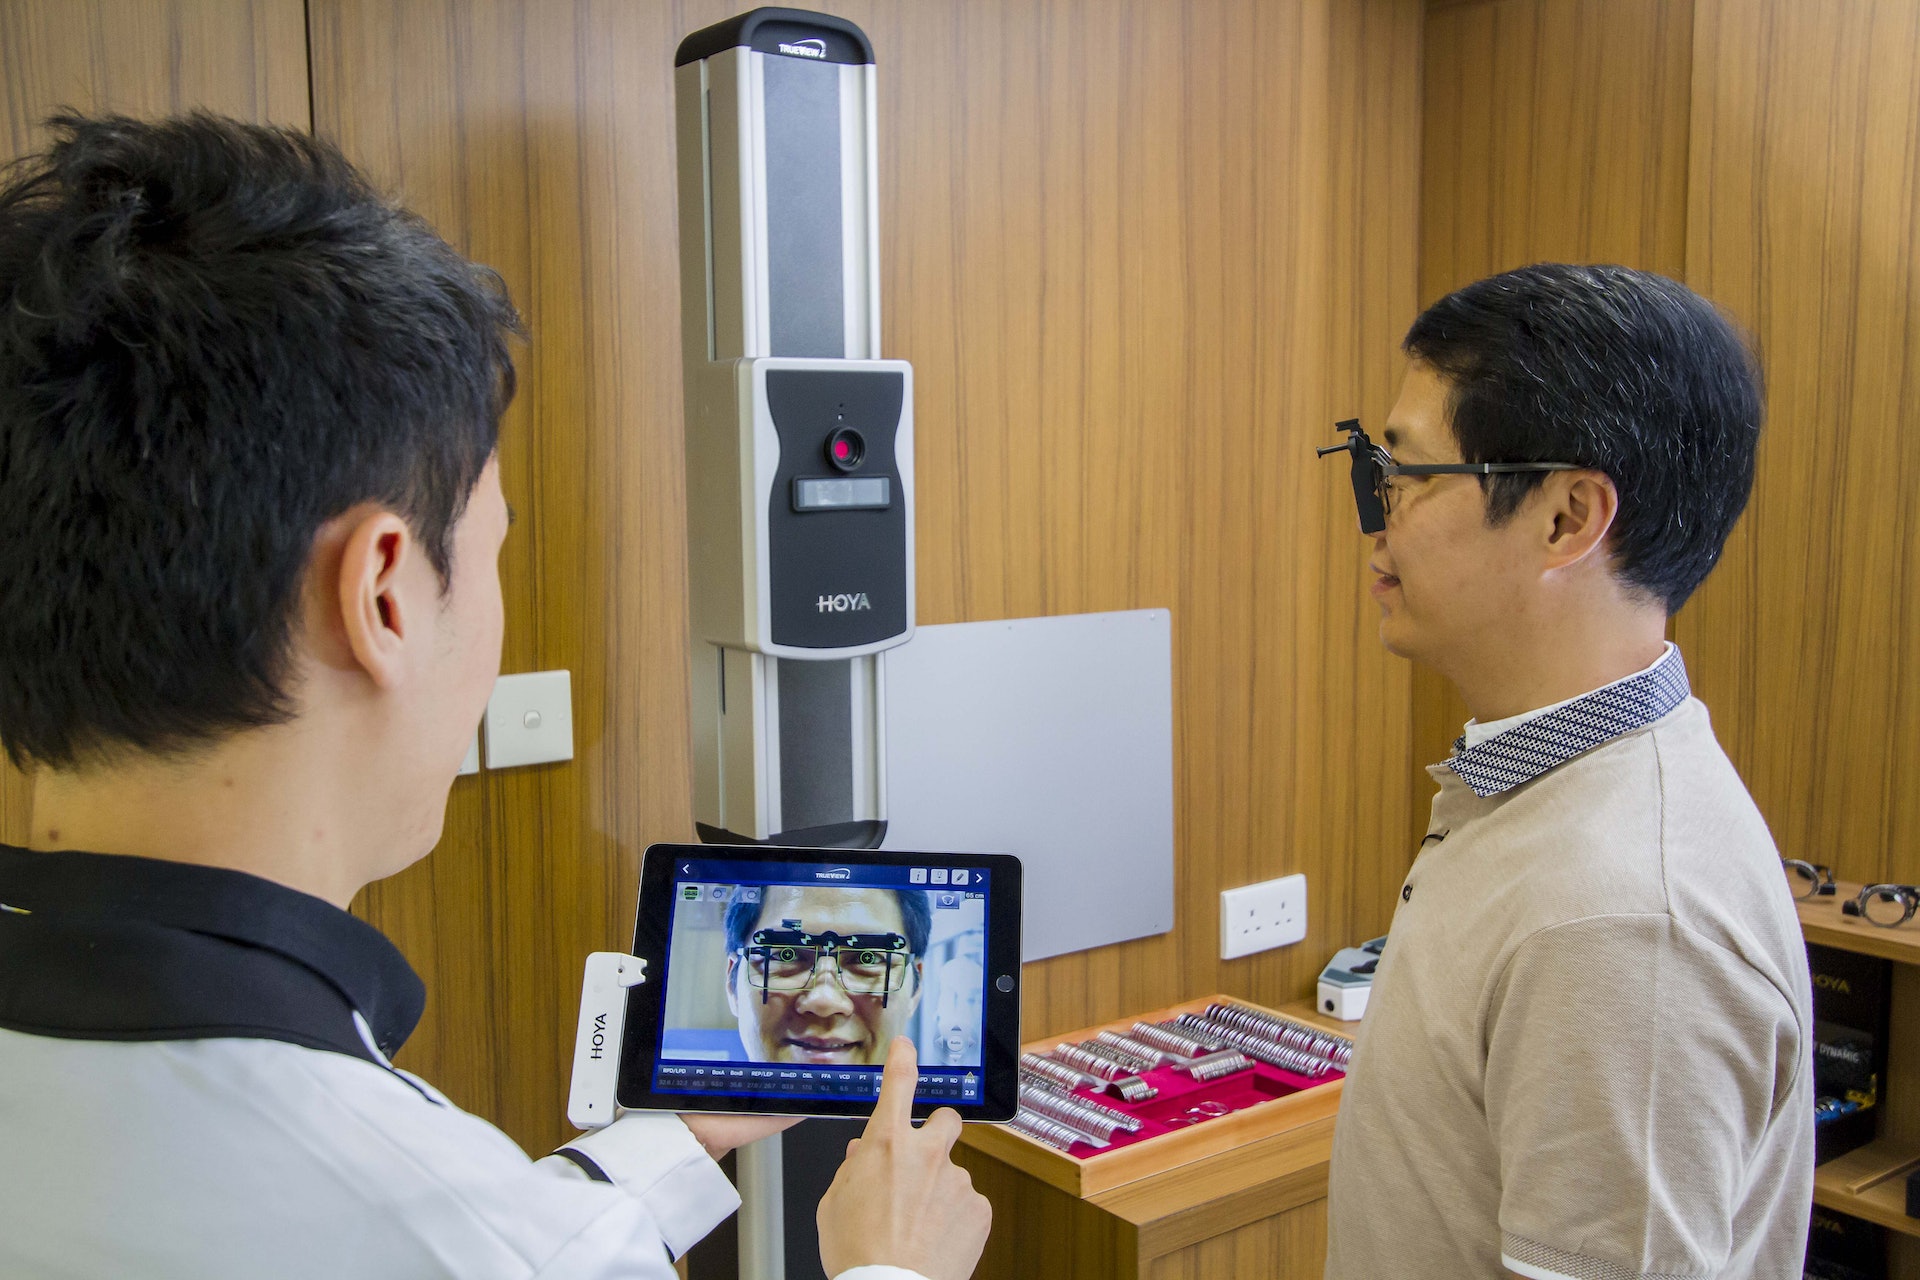 由OPTICAL 88與日本鏡片品牌HOYA合作開設，香港首間「漸進鏡體驗中心」。中心設有先進儀器及嶄新設備，提供一站式「個人化漸進鏡片」體驗及驗配服務。